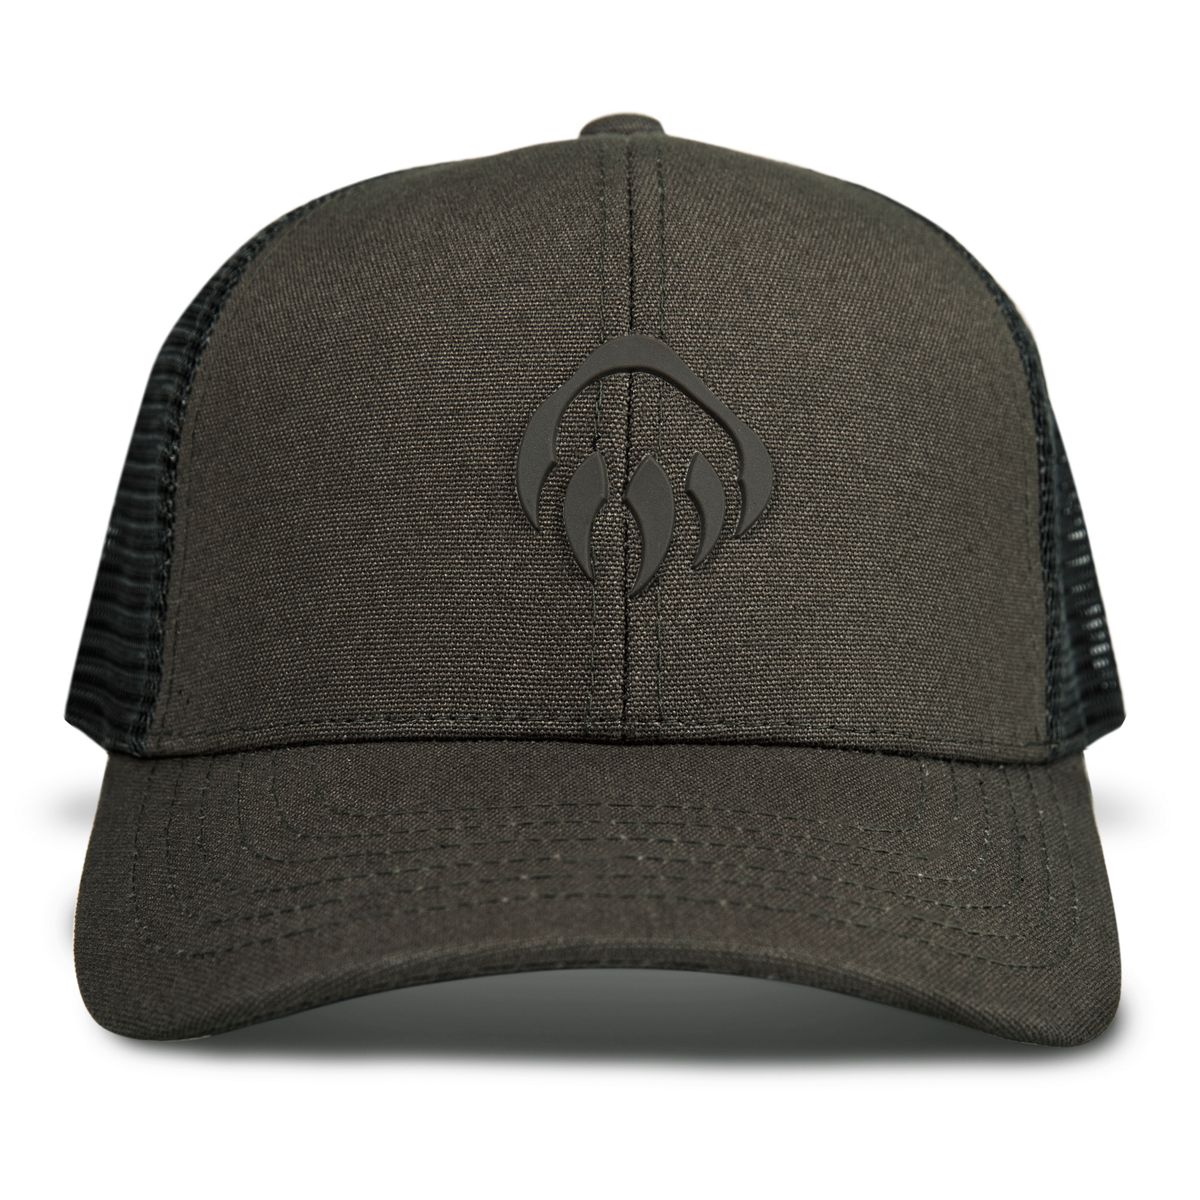 Raised Claw Logo Trucker Cap, Black Olive, dynamic